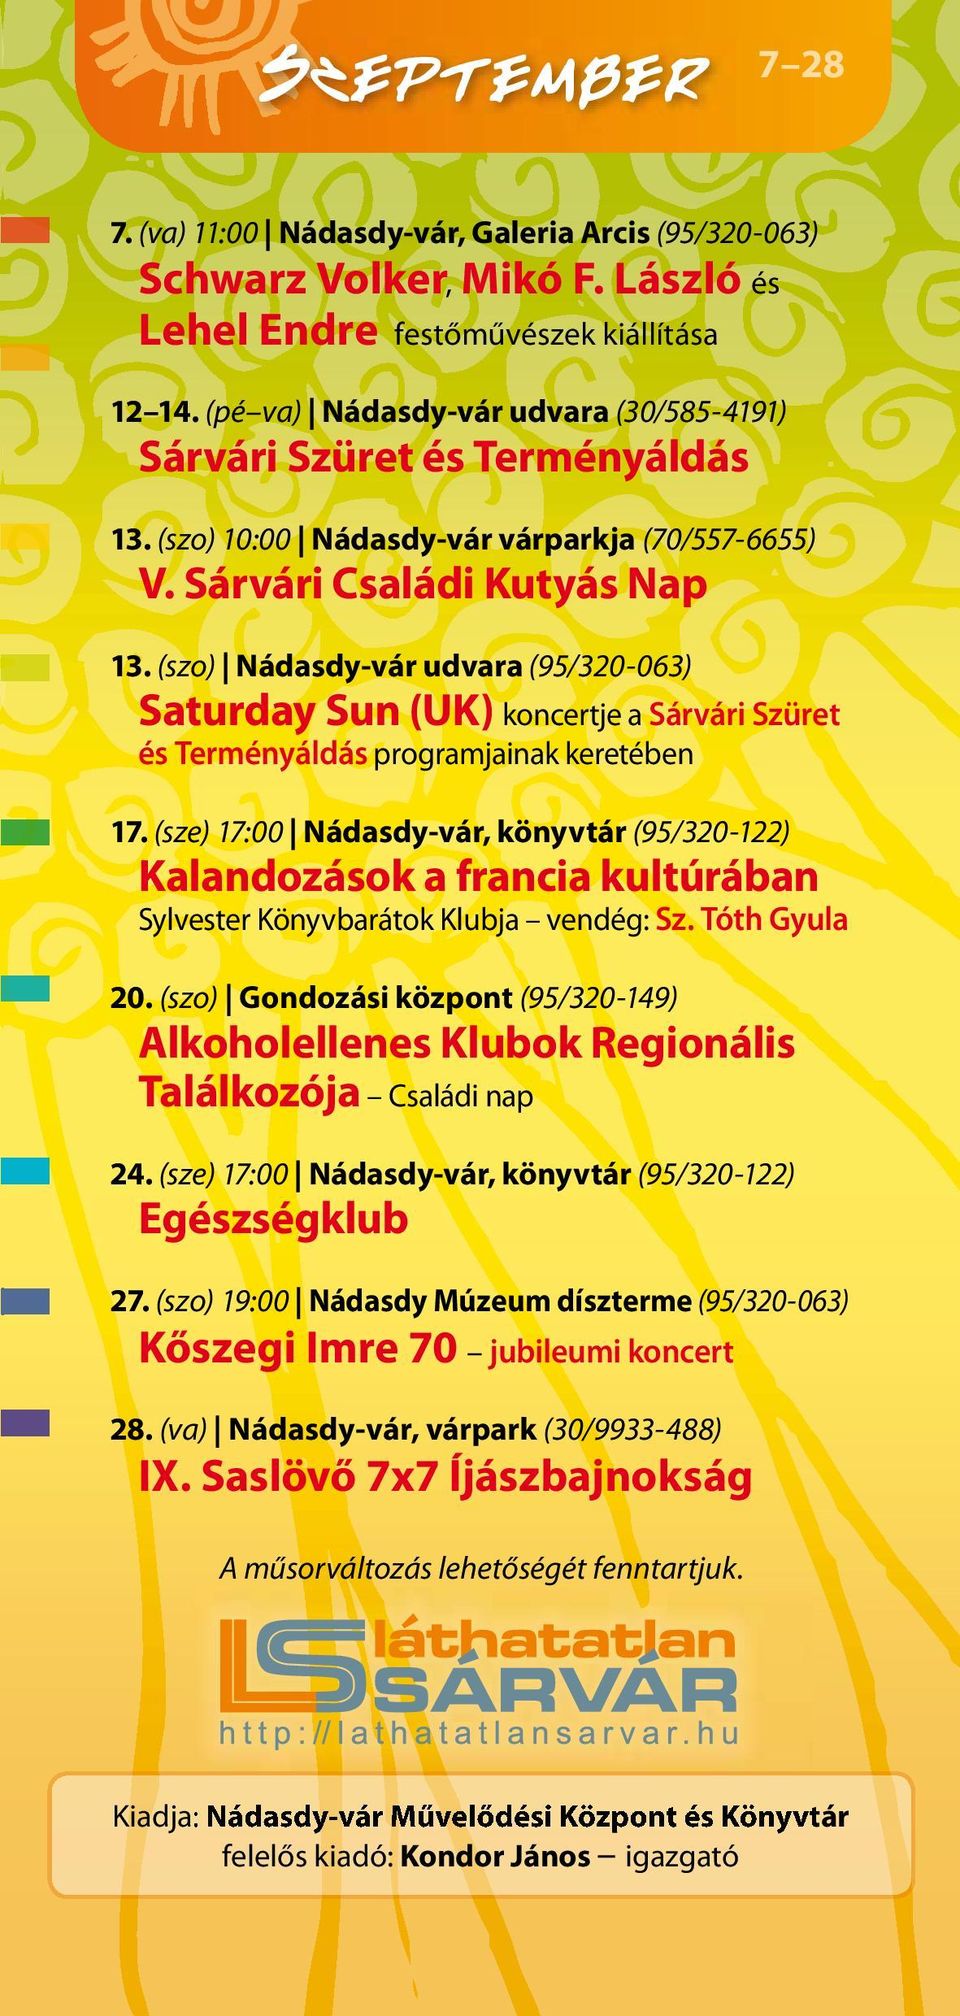 (szo) Nádasdy-vár udvara (95/320-063) Saturday Sun (UK) koncertje a Sárvári Szüret és Terményáldás programjainak keretében 17.